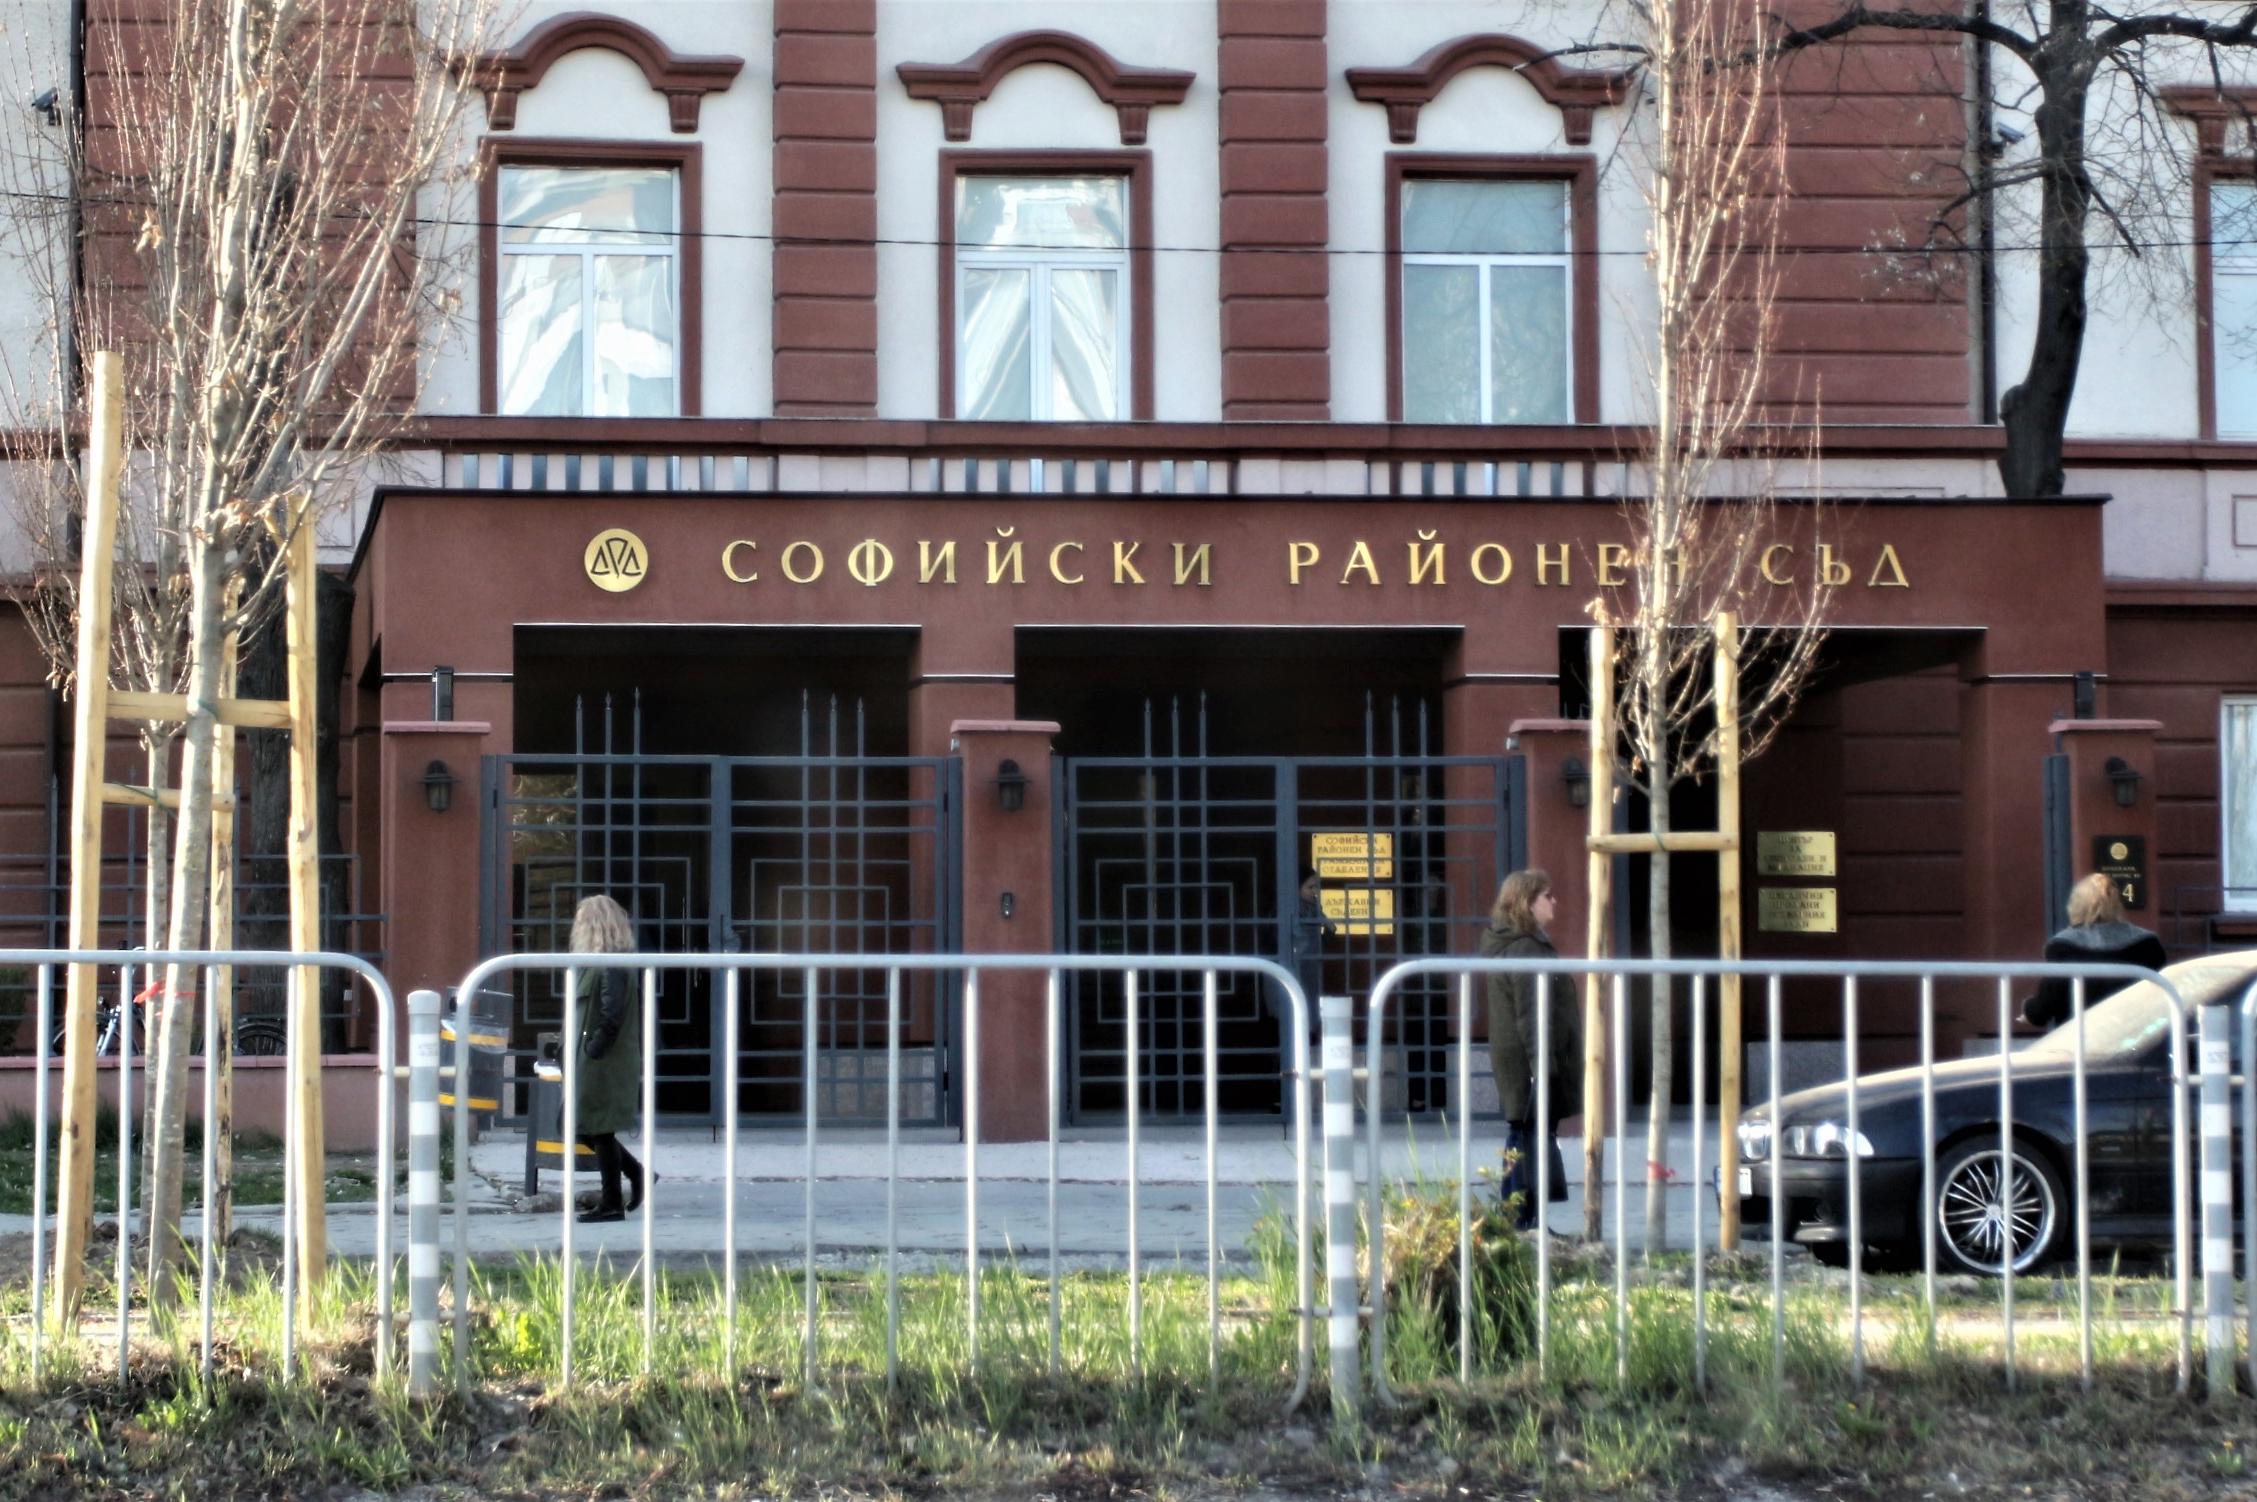 Софийски районен съд